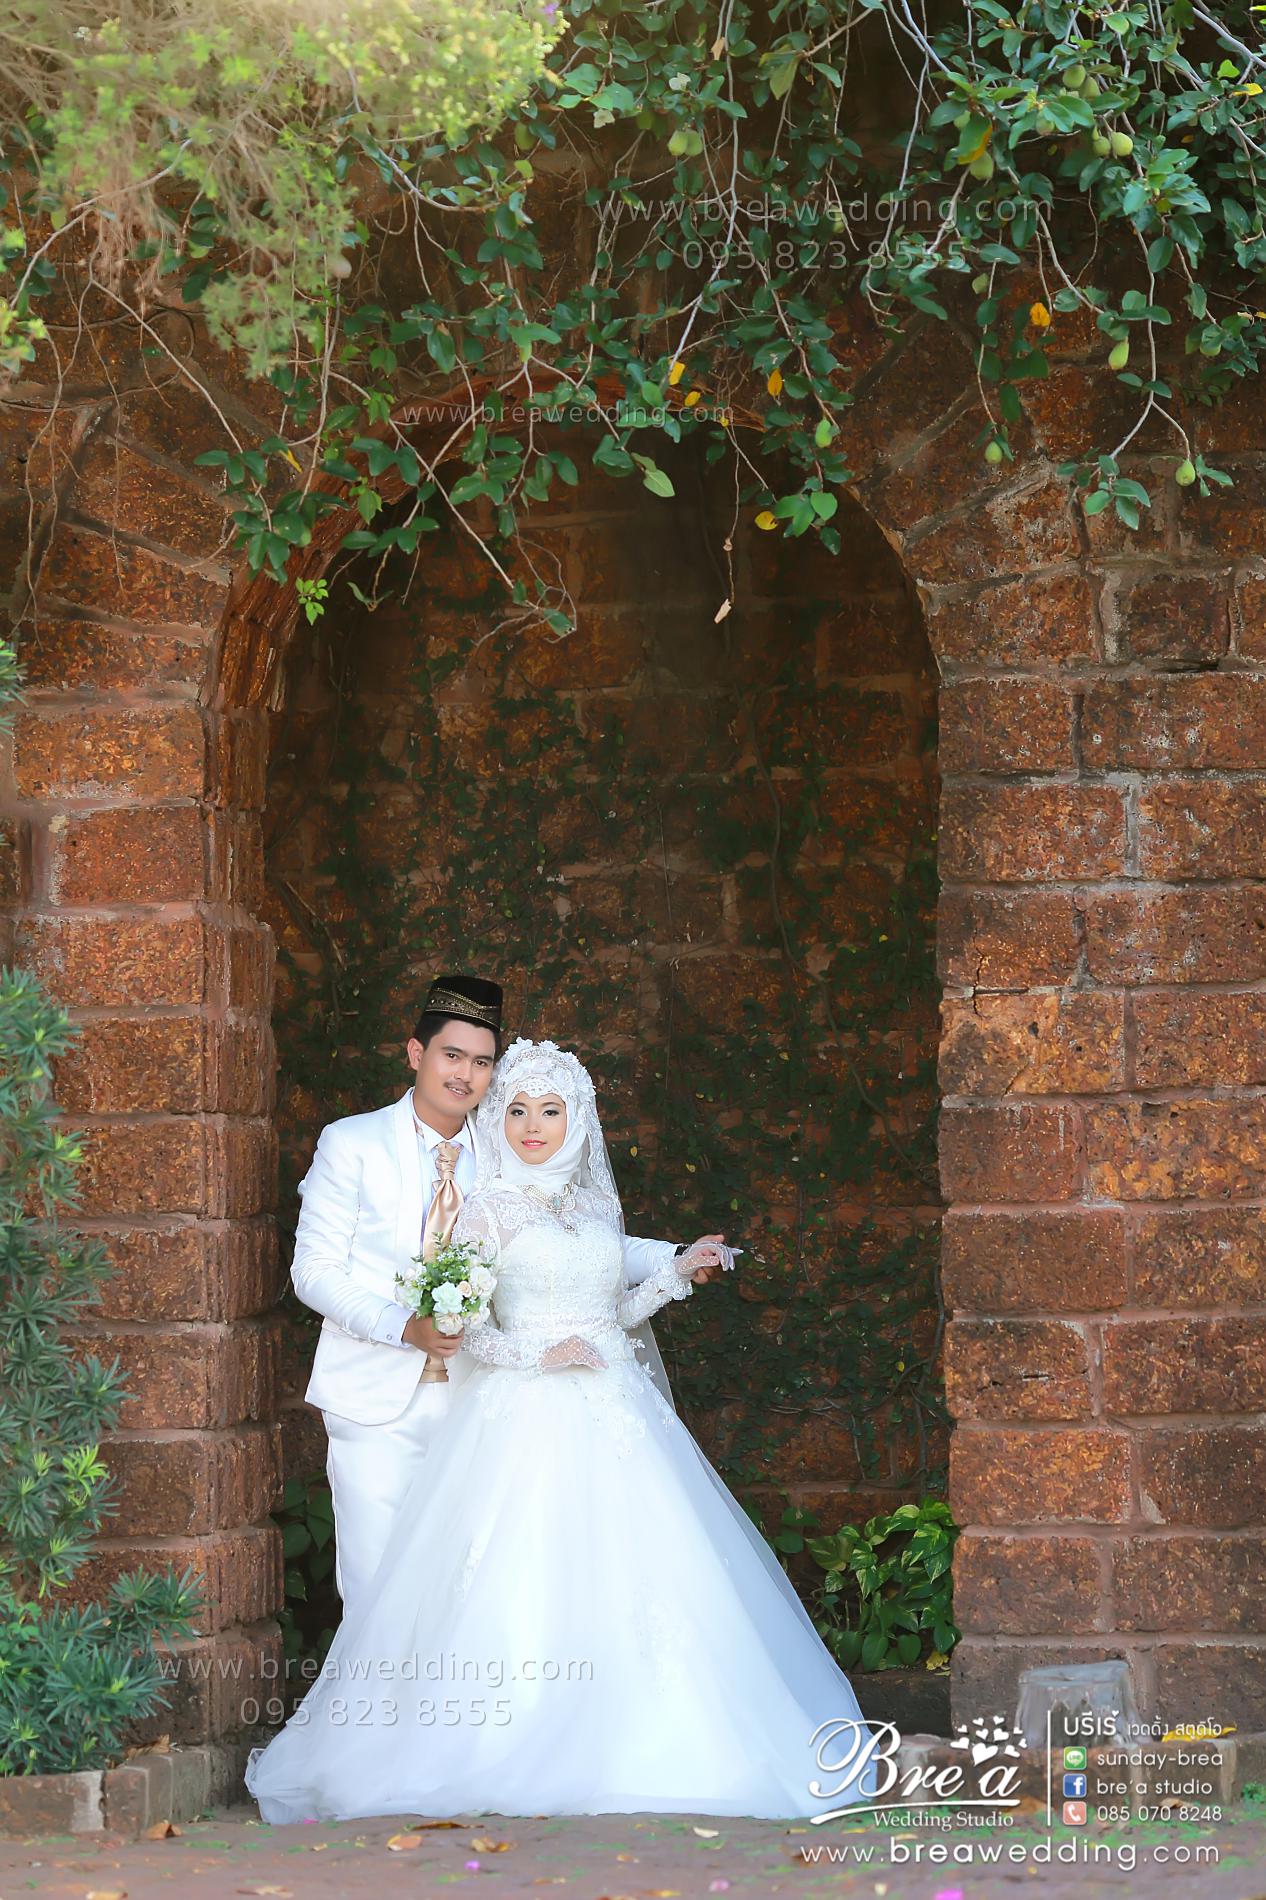 พรีเวดดิ้ง ถ่ายรูปแต่งงาน ชุดแต่งงานอิสลาม